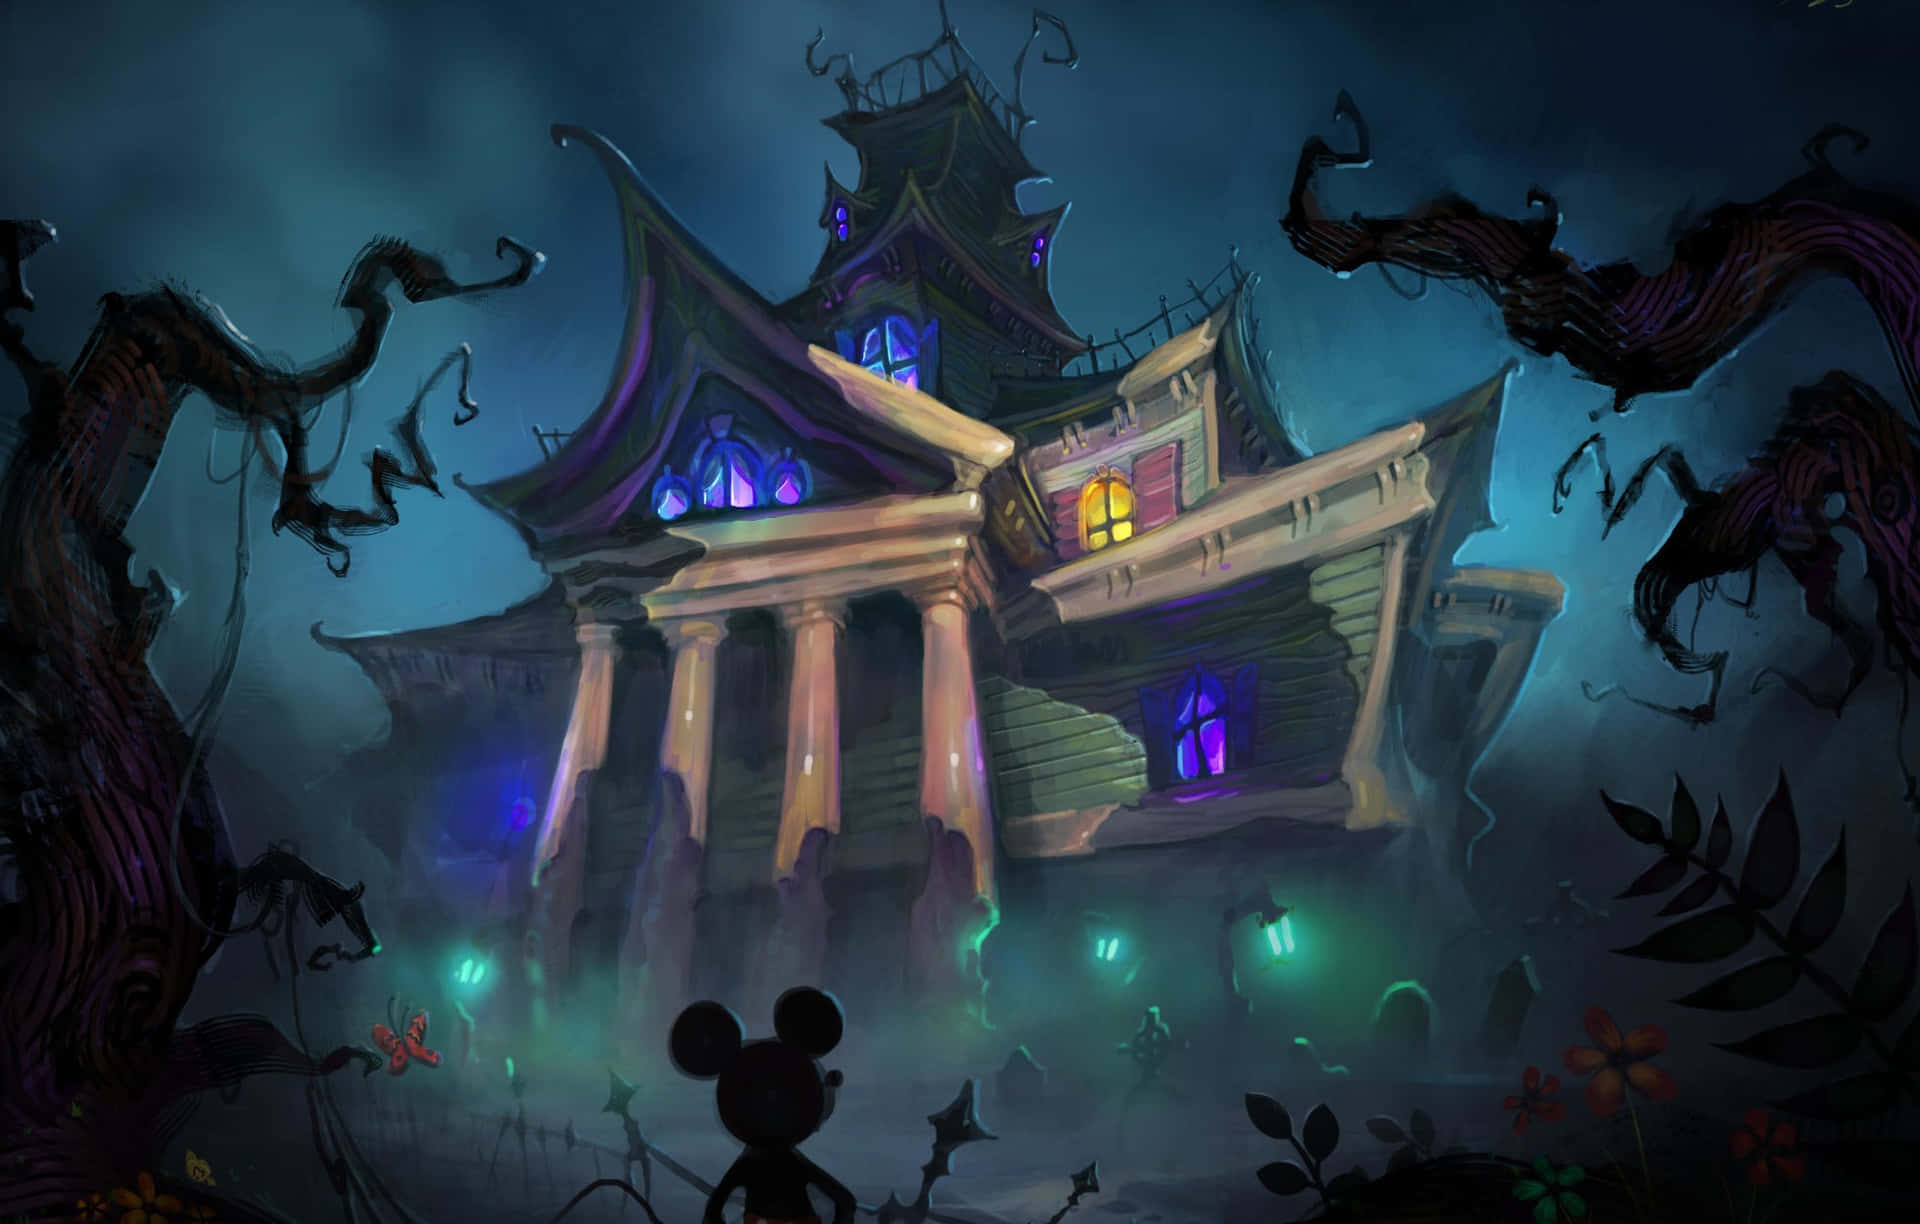 Magiaespeluznante De Halloween De Disney